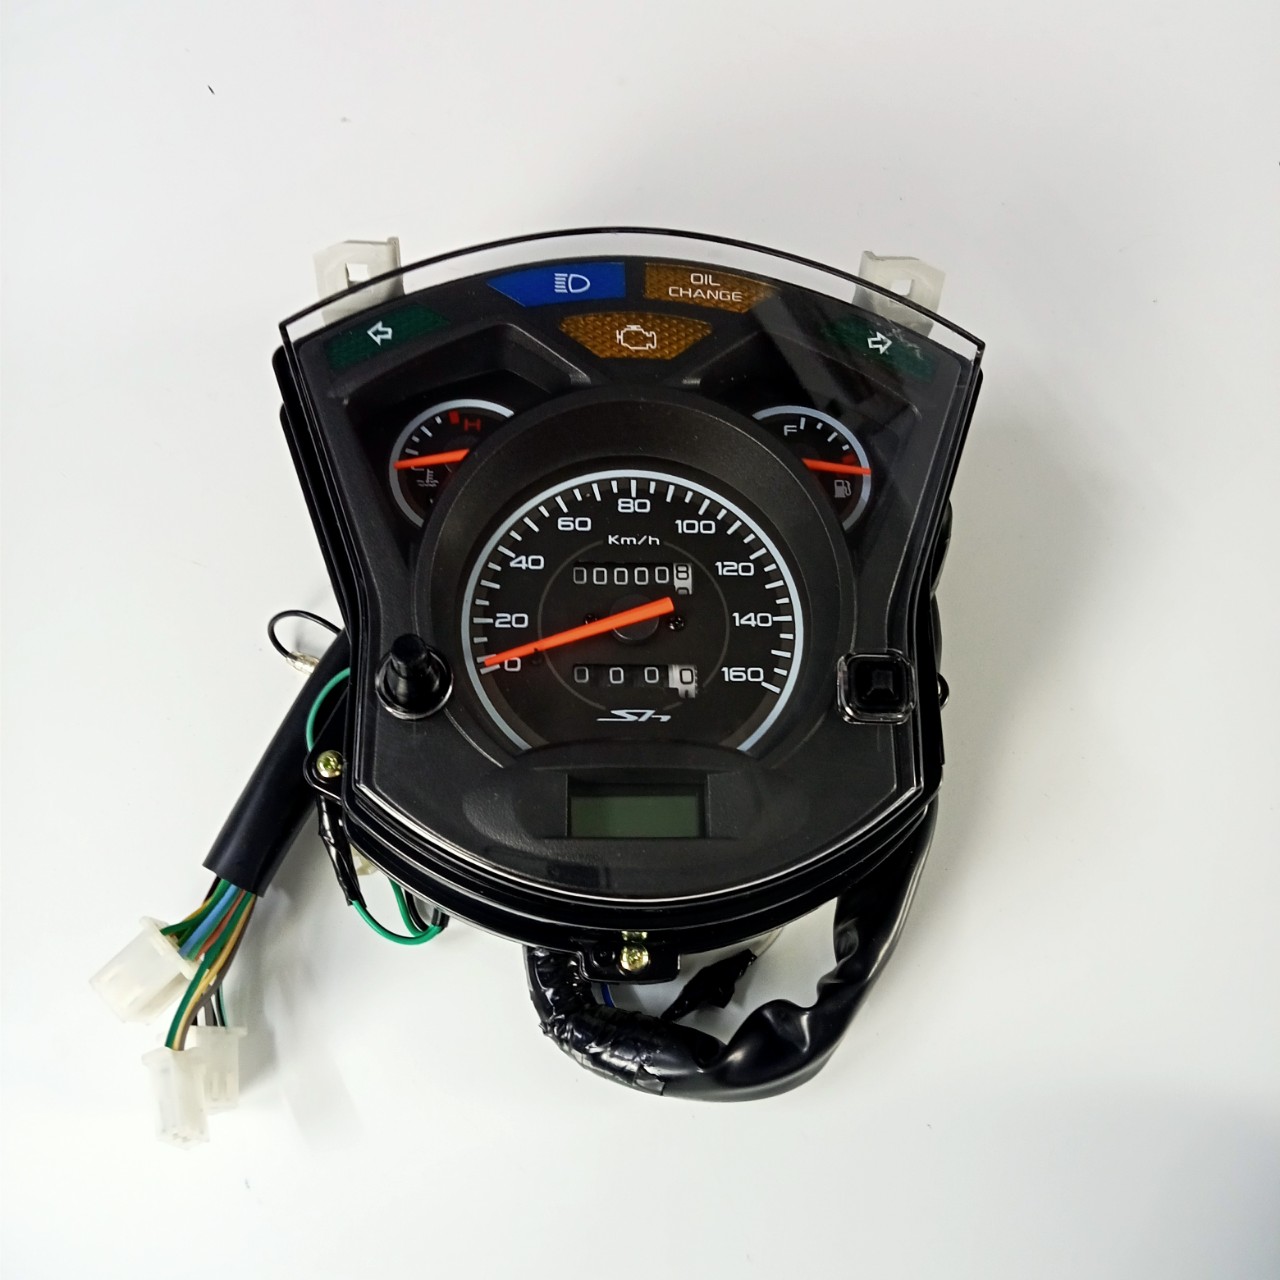 Đồng hồ cơ dành cho xe SH Ý đời 2010 có thể độ cho Dylan, SH (2004-2006) - TKB8874,,'K11T1'